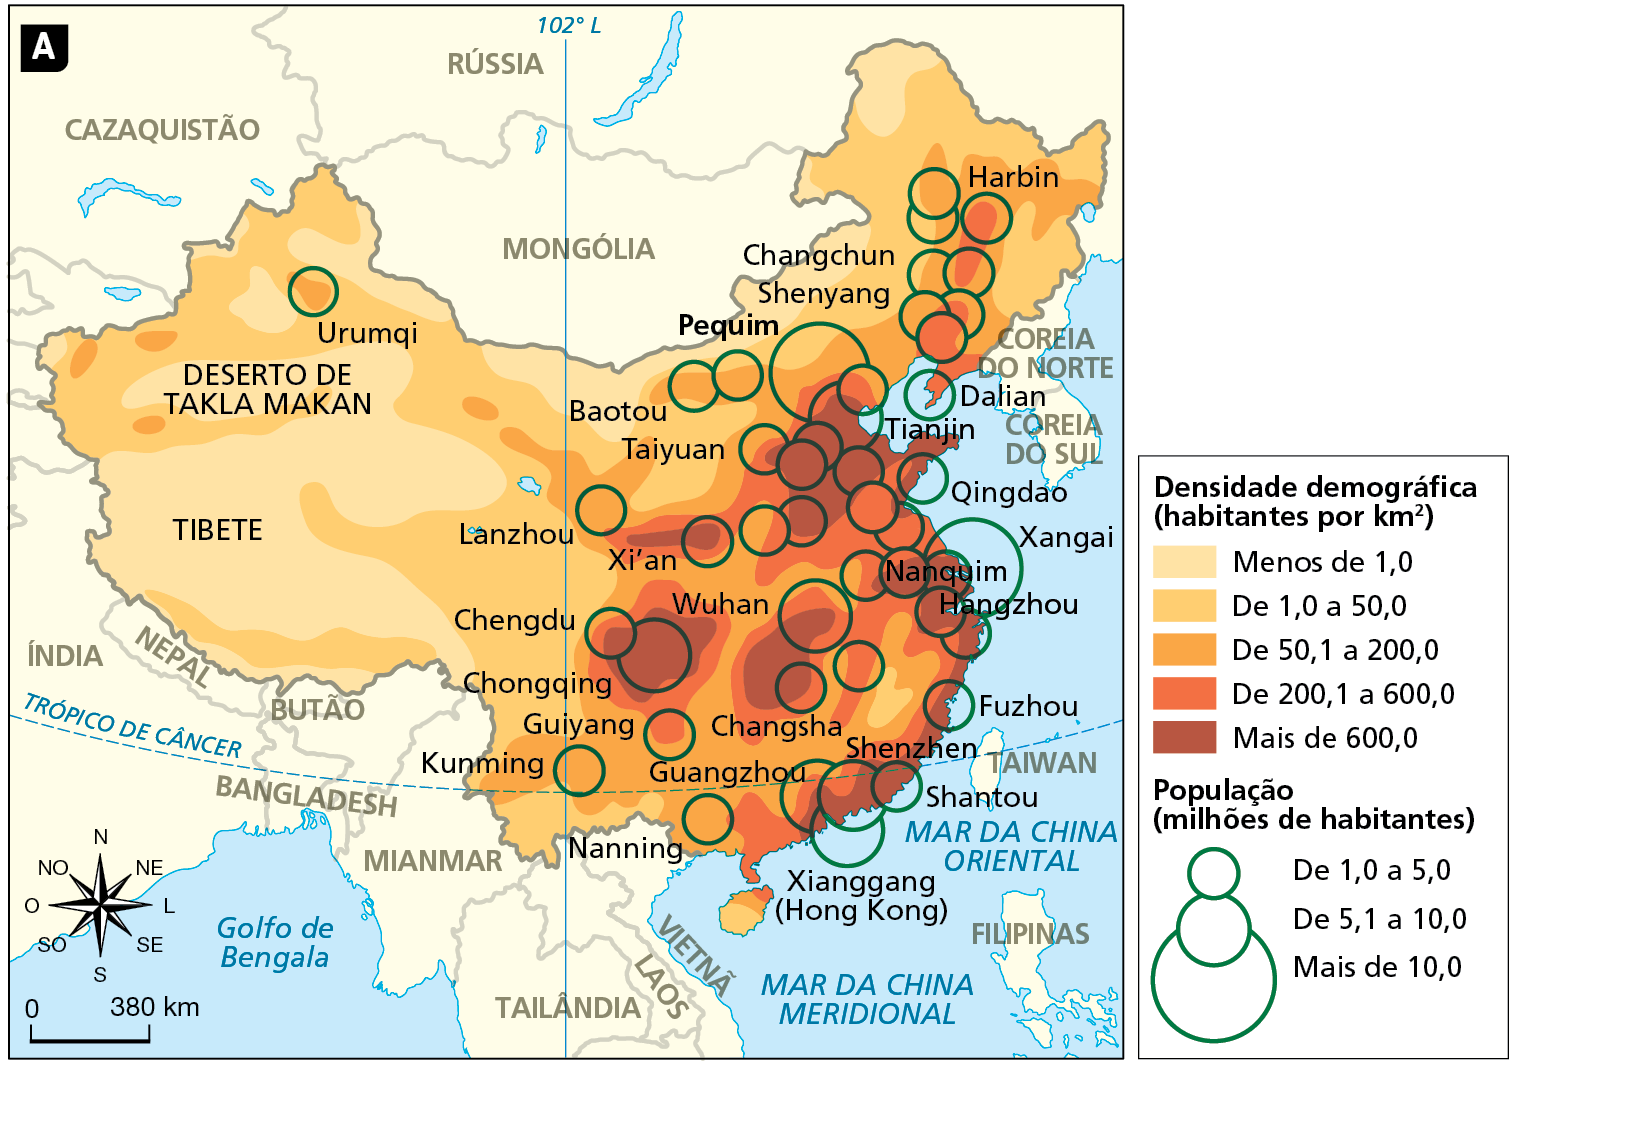 Mapa A. China: densidade demográfica e aglomerações urbanas - 2019. Mapa do território da China demarcando as áreas com diferentes níveis de densidade demográfica, em habitantes por quilômetro quadrado, destacadas em tonalidades de cor que variam do mais claro, em amarelo (áreas com baixa densidade), para o mais escuro, em marrom (áreas com elevada densidade). O mapa também localiza as principais aglomerações de habitantes por meio de círculos proporcionais que variam em ordem crescente de 1,0 a 5,0 milhões até mais de 10 milhões habitantes.
Densidade demográfica (habitantes por quilômetro quadrado): 
Menos de 1,0 habitante: extensa faixa na região oeste, ao redor das regiões de Tibete, Deserto de Takla Makan, Urumqi. 
De 1,0 a 50,0 habitantes: Urumqi, faixa no centro: Changchun, Shenyang, Baotou, Chegdu. 
De 200,1 a 600,0 habitantes: Harbin, Kunming, Lanzhou. 
Mais de 600,0 habitantes: faixa centro-leste: Wuhan, Xi''an, Harbin. 
População (em milhões de habitantes): 
concentrada na faixa leste: Wuhan, Xi'an, tianjin, Nanquim, Hangzhou. 
De 1,0 a 5,0 milhões de habitantes: Harbin, Dalian, Qingdao, Fufhou, Guiyang, Kunming, Chegdu, Lanzhou, Pequim. 
De 5,1 a 10,0 milhões de habitantes: Wuhan, Guangzhou, Tianjin. 
Mais de 10,0 milhões de habitantes: Nanquim, Pequim.
Abaixo, rosa dos ventos e escala de 0 a 380 quilômetros.